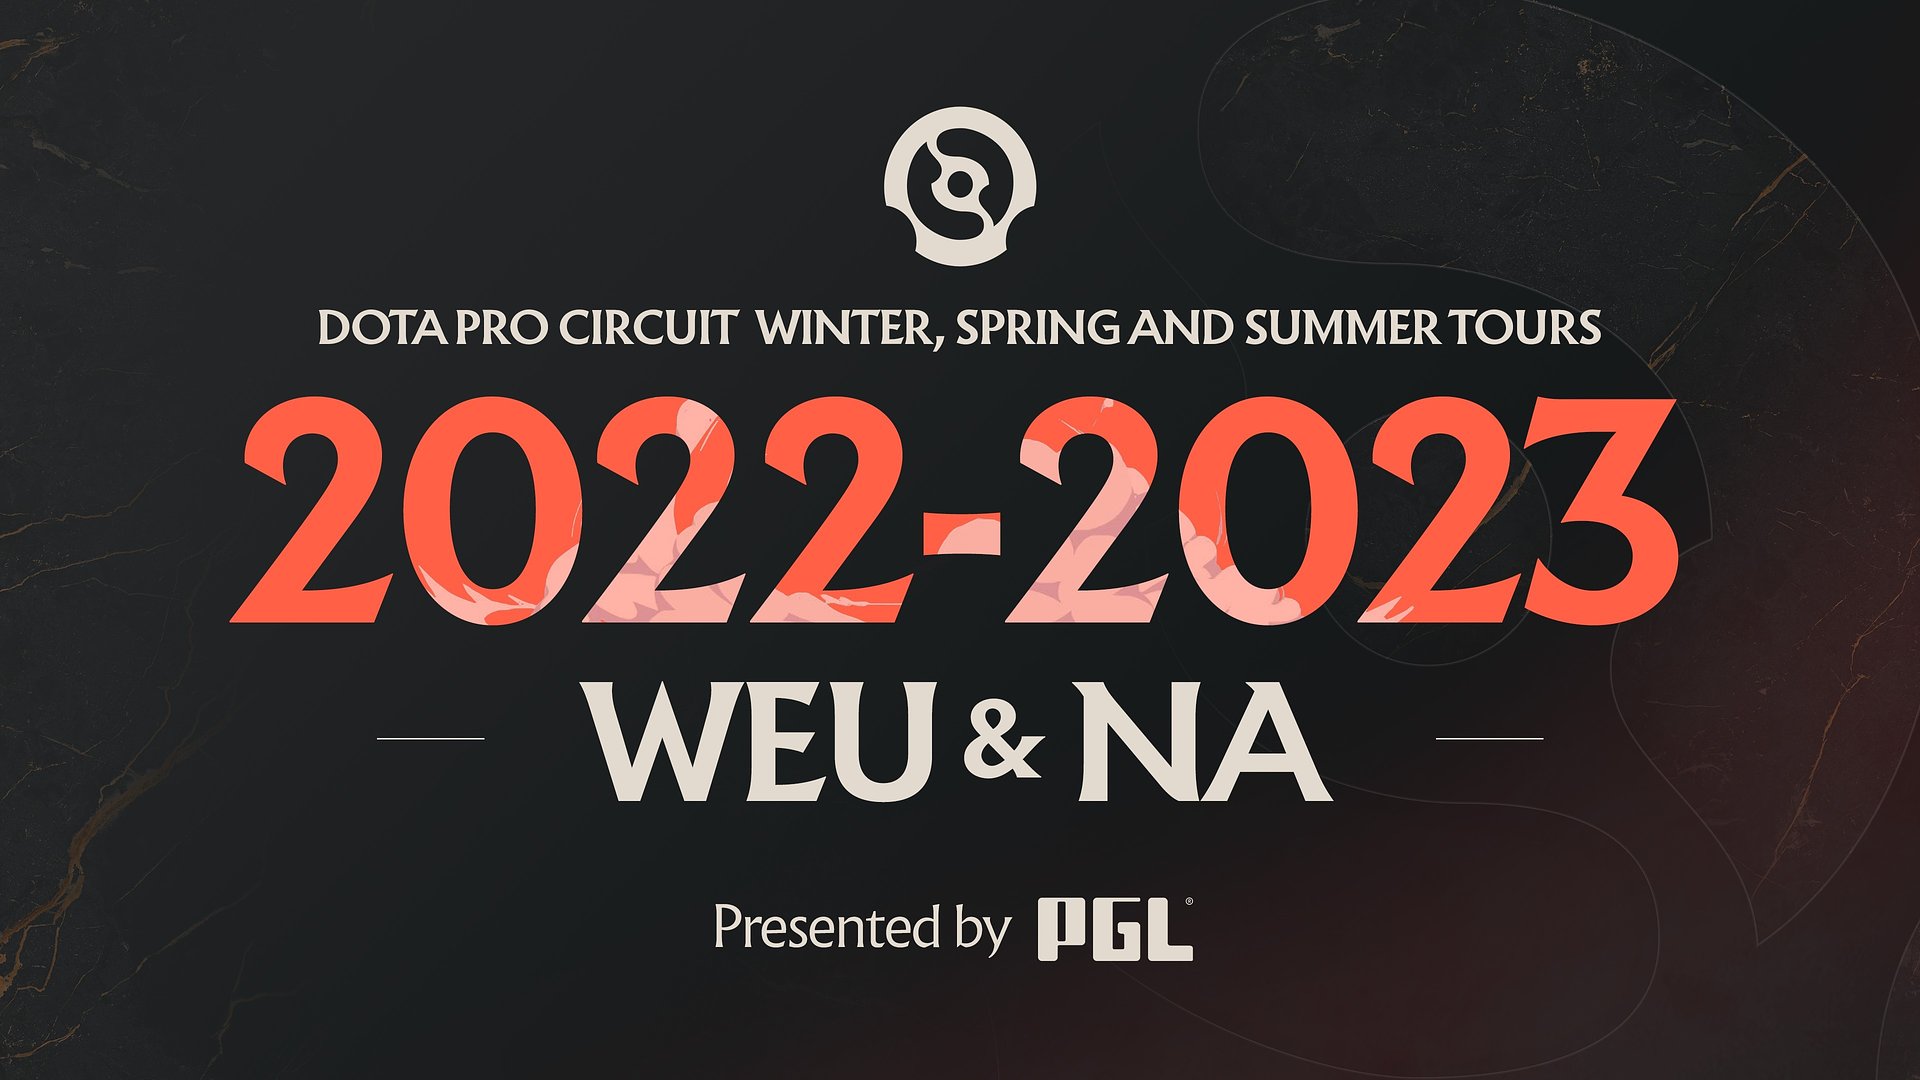 PGL проведёт весь сезон DPC 2022/23 для Западной Европы и Северной Америки